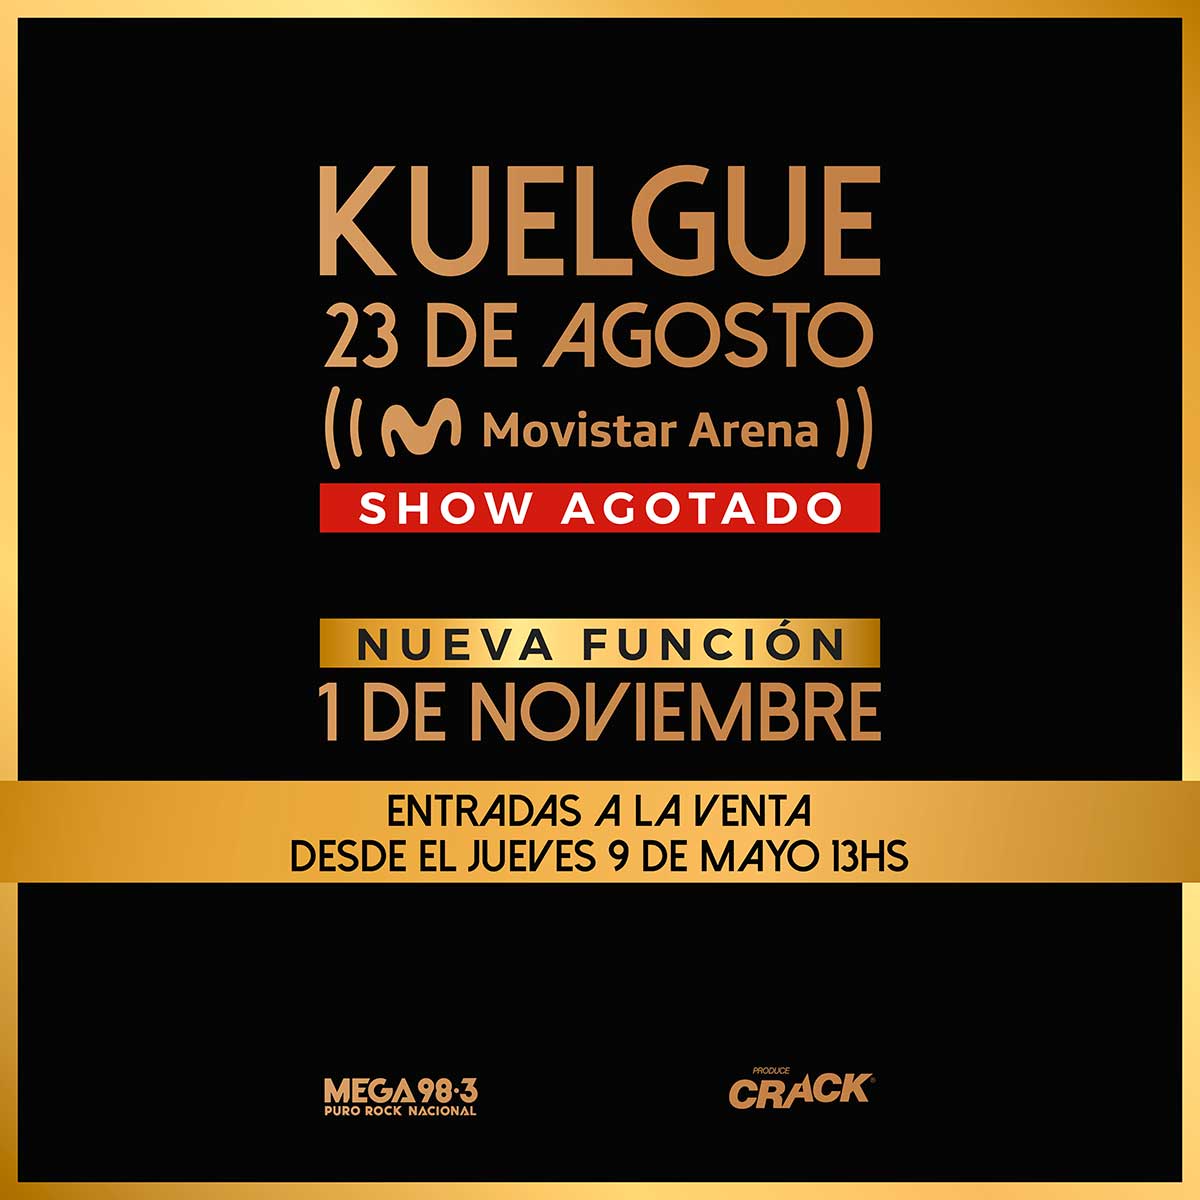 El Kuelgue en Movistar Arena